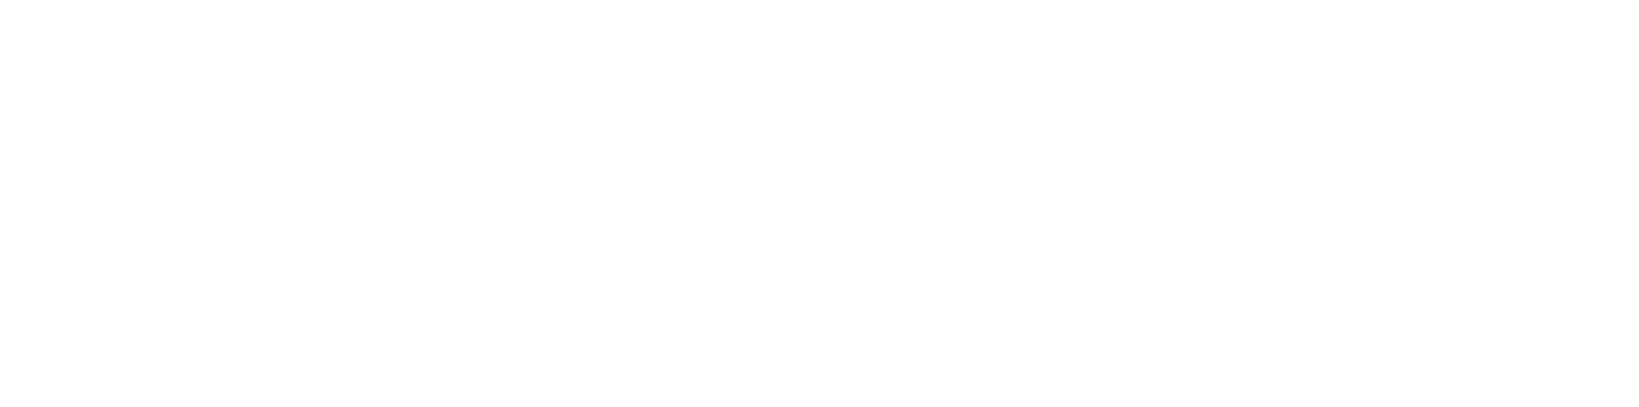 Fluence Energy logo large for dark backgrounds (transparent PNG)